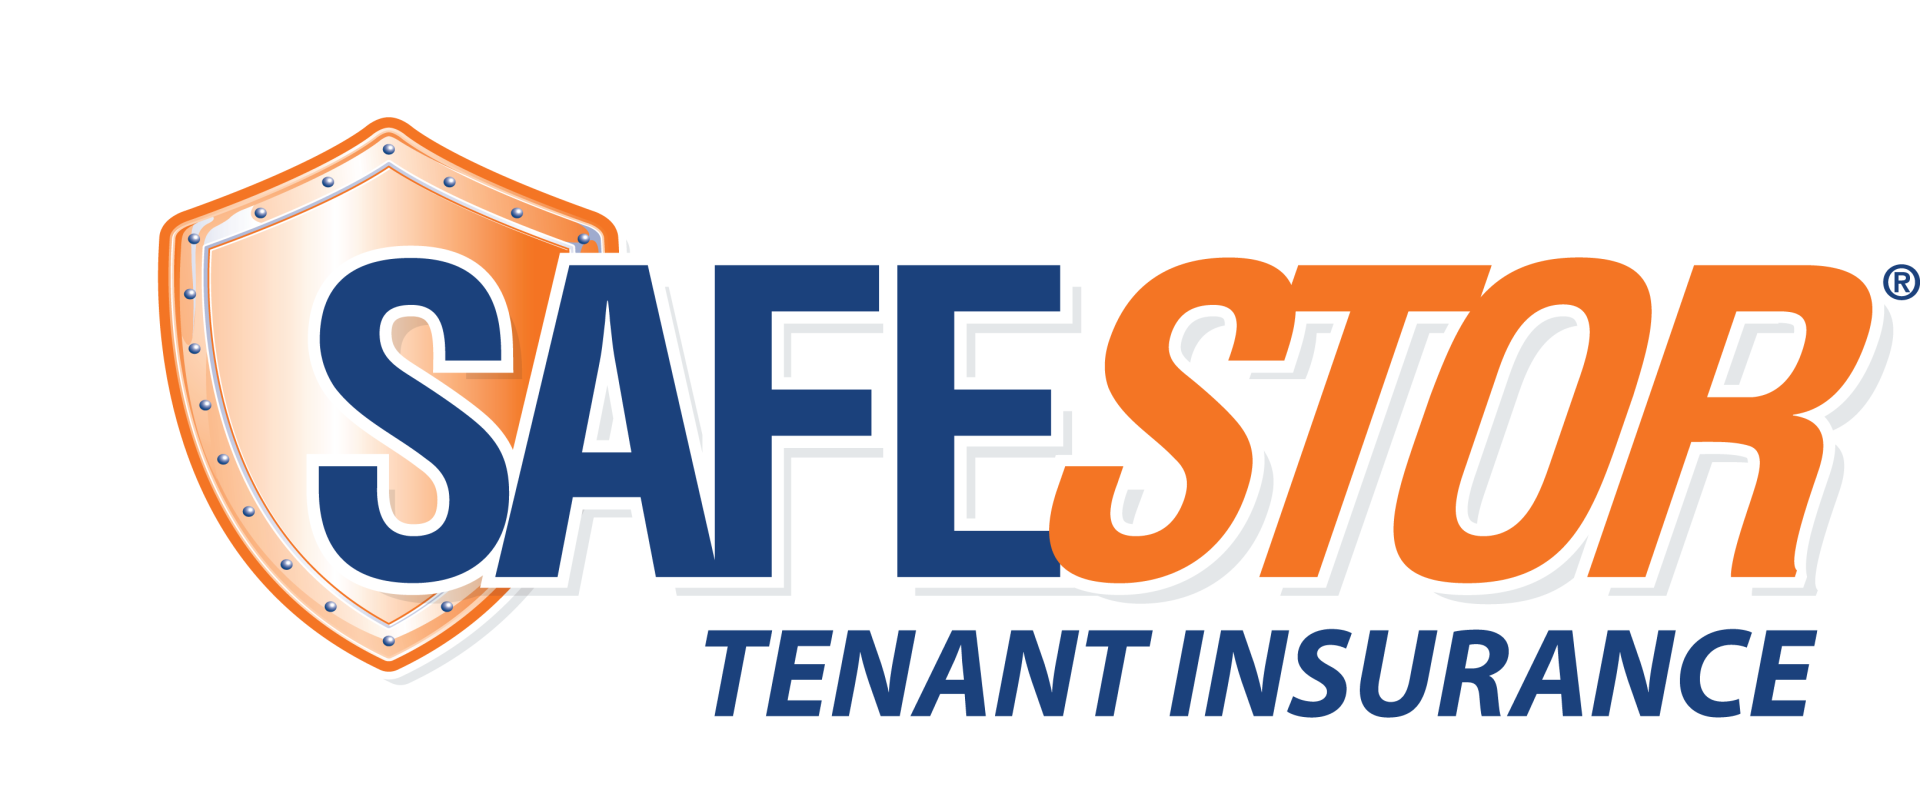 Safestor Tenant Insurance logo